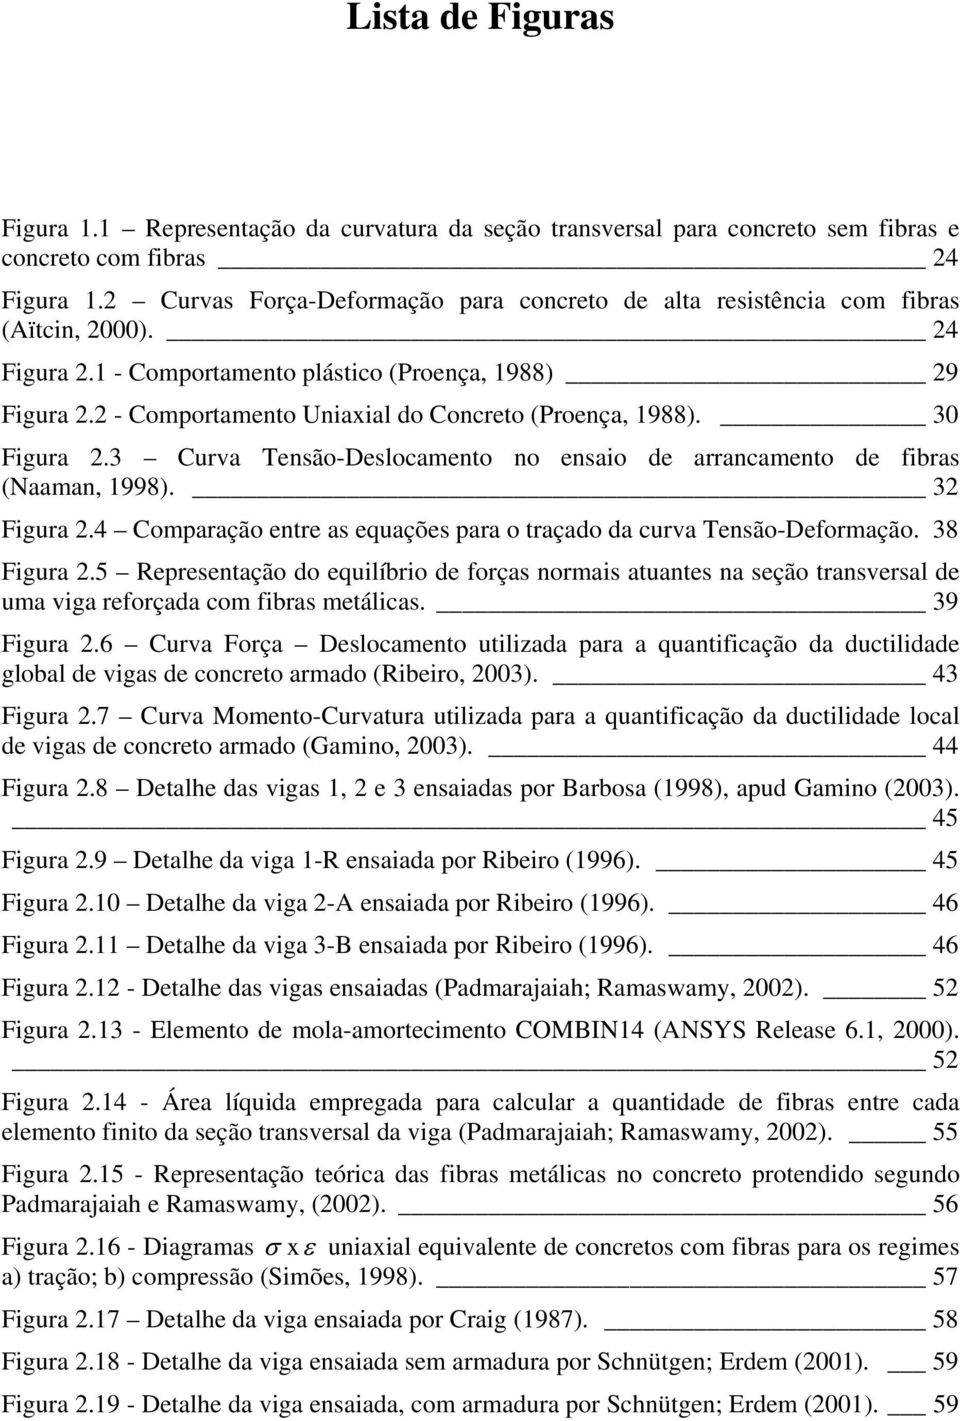 30 Figura.3 Curva Tensão-Desloamento no ensaio de arranamento de ibras (Naaman, 1998). 3 Figura.4 Comparação entre as equações para o traçado da urva Tensão-Deormação. 38 Figura.